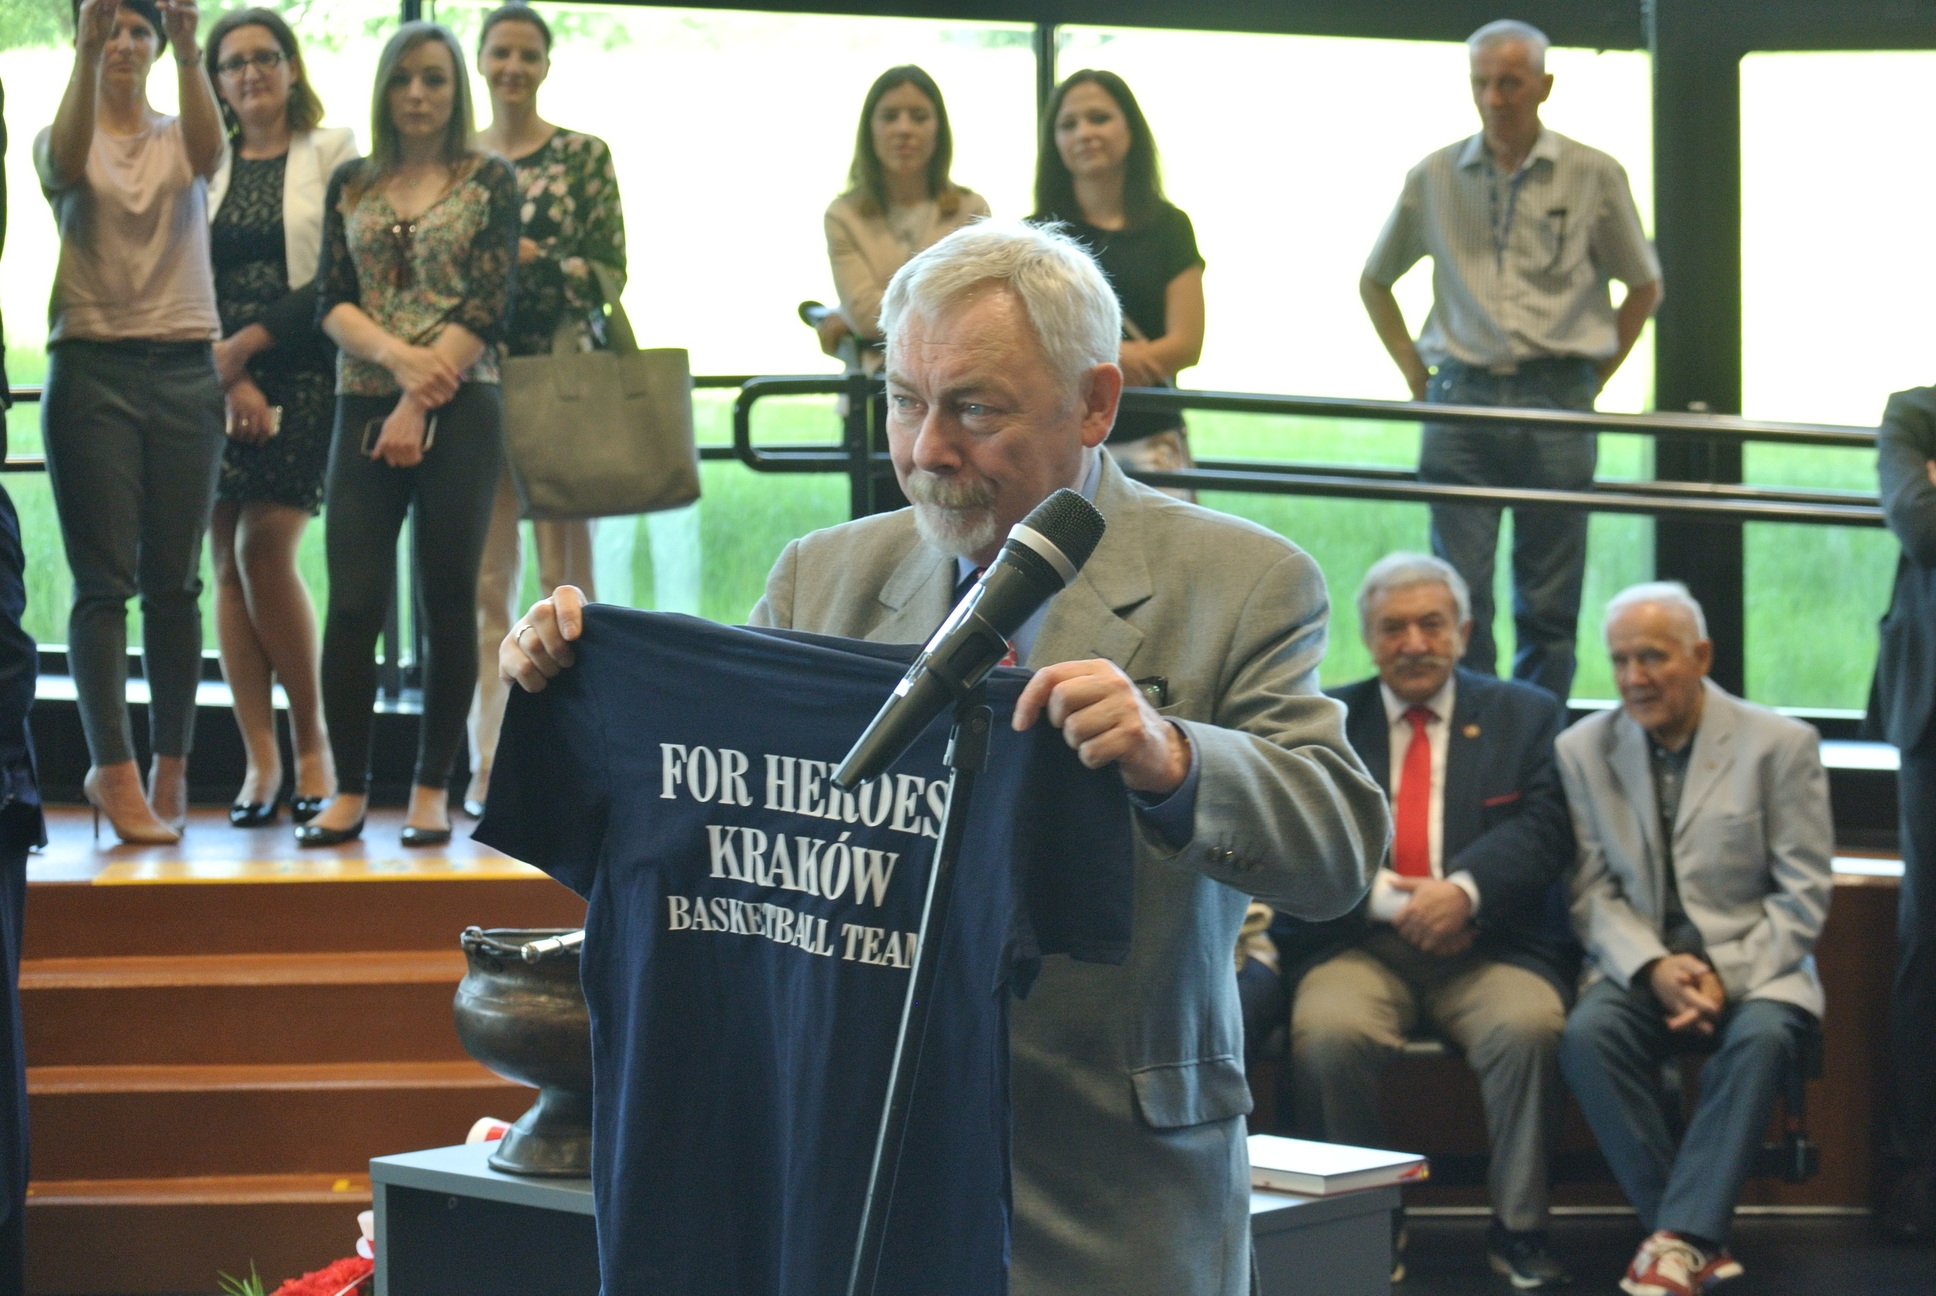 Prezydent Jacek Majchrowski z koszulką od Fundacji For Heroes